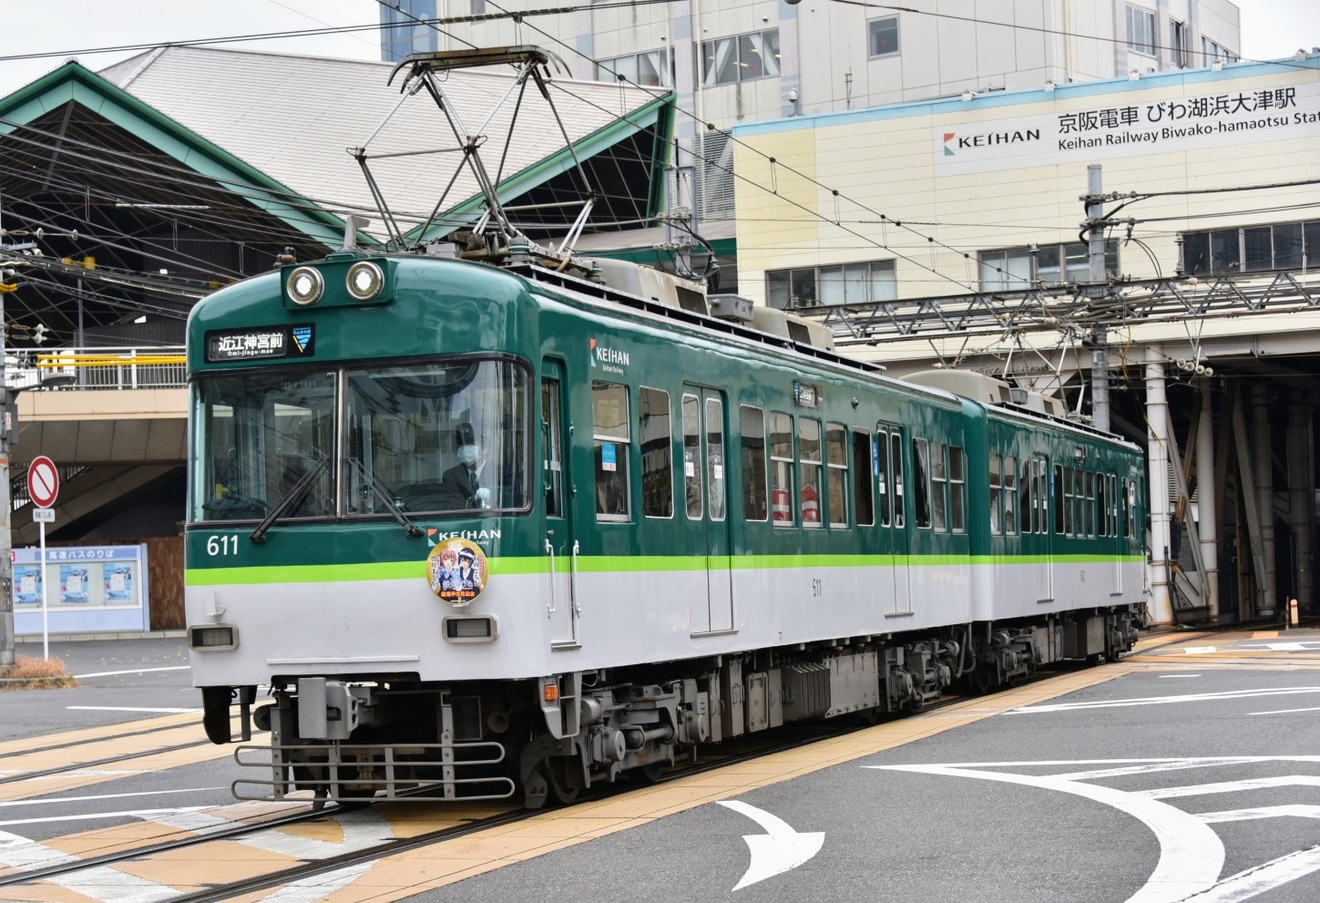 【京阪】大阪モノレール×京阪電車 鉄道むすめコラボキャンペーンヘッドマークの拡大写真